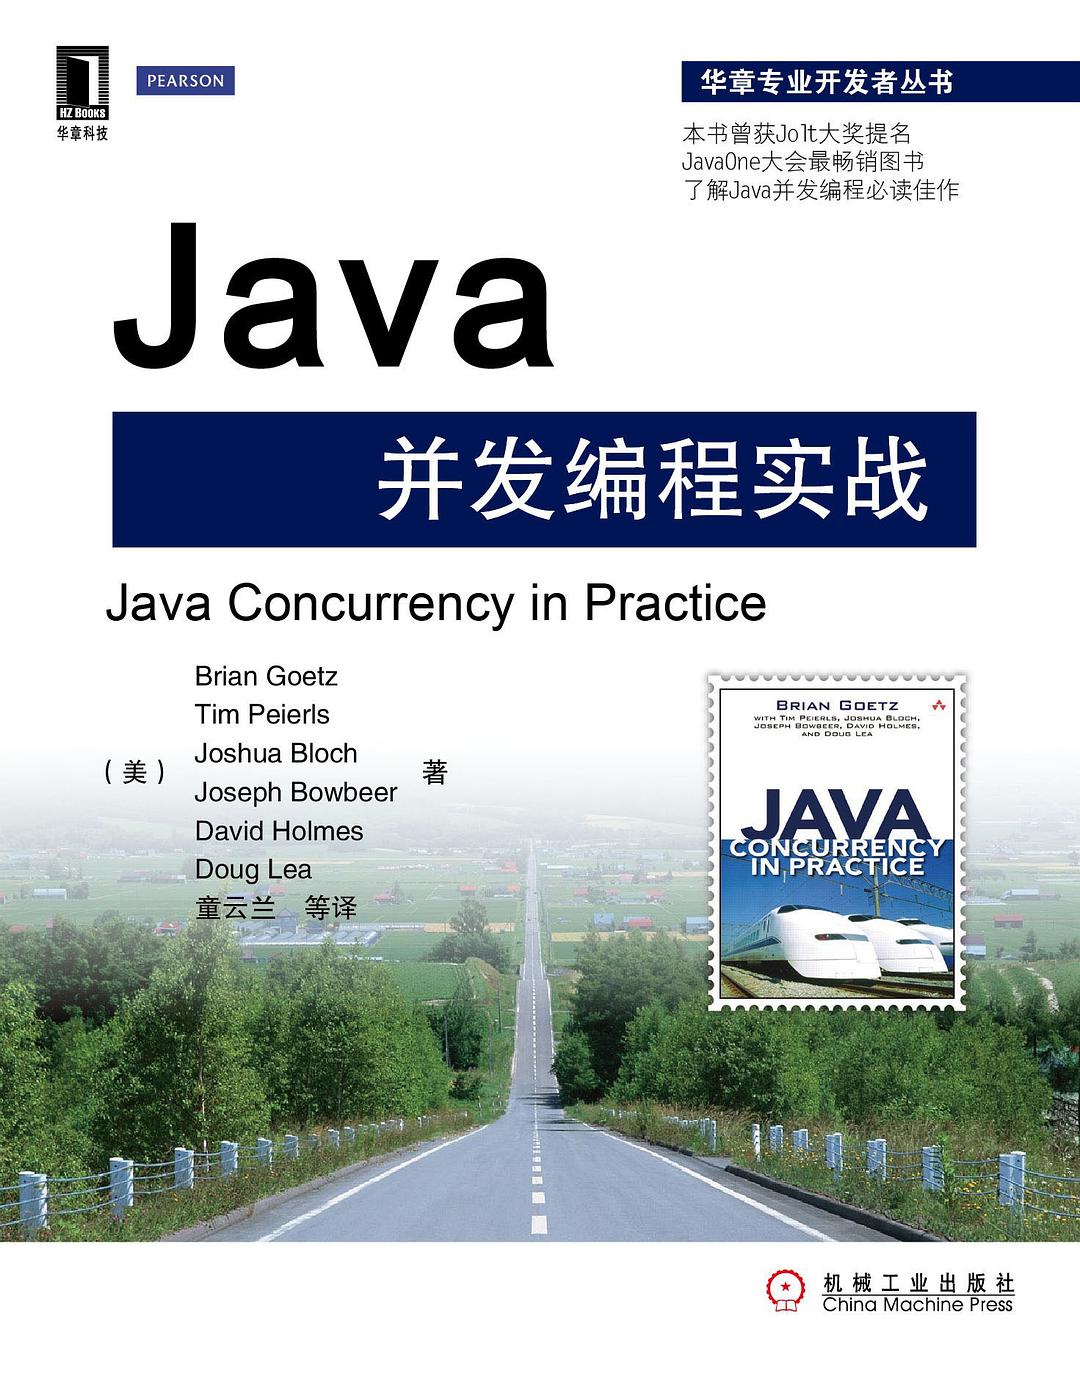 阿里P8大神十年珍藏，Java技术电子书绝佳推荐，每一本都要吃透